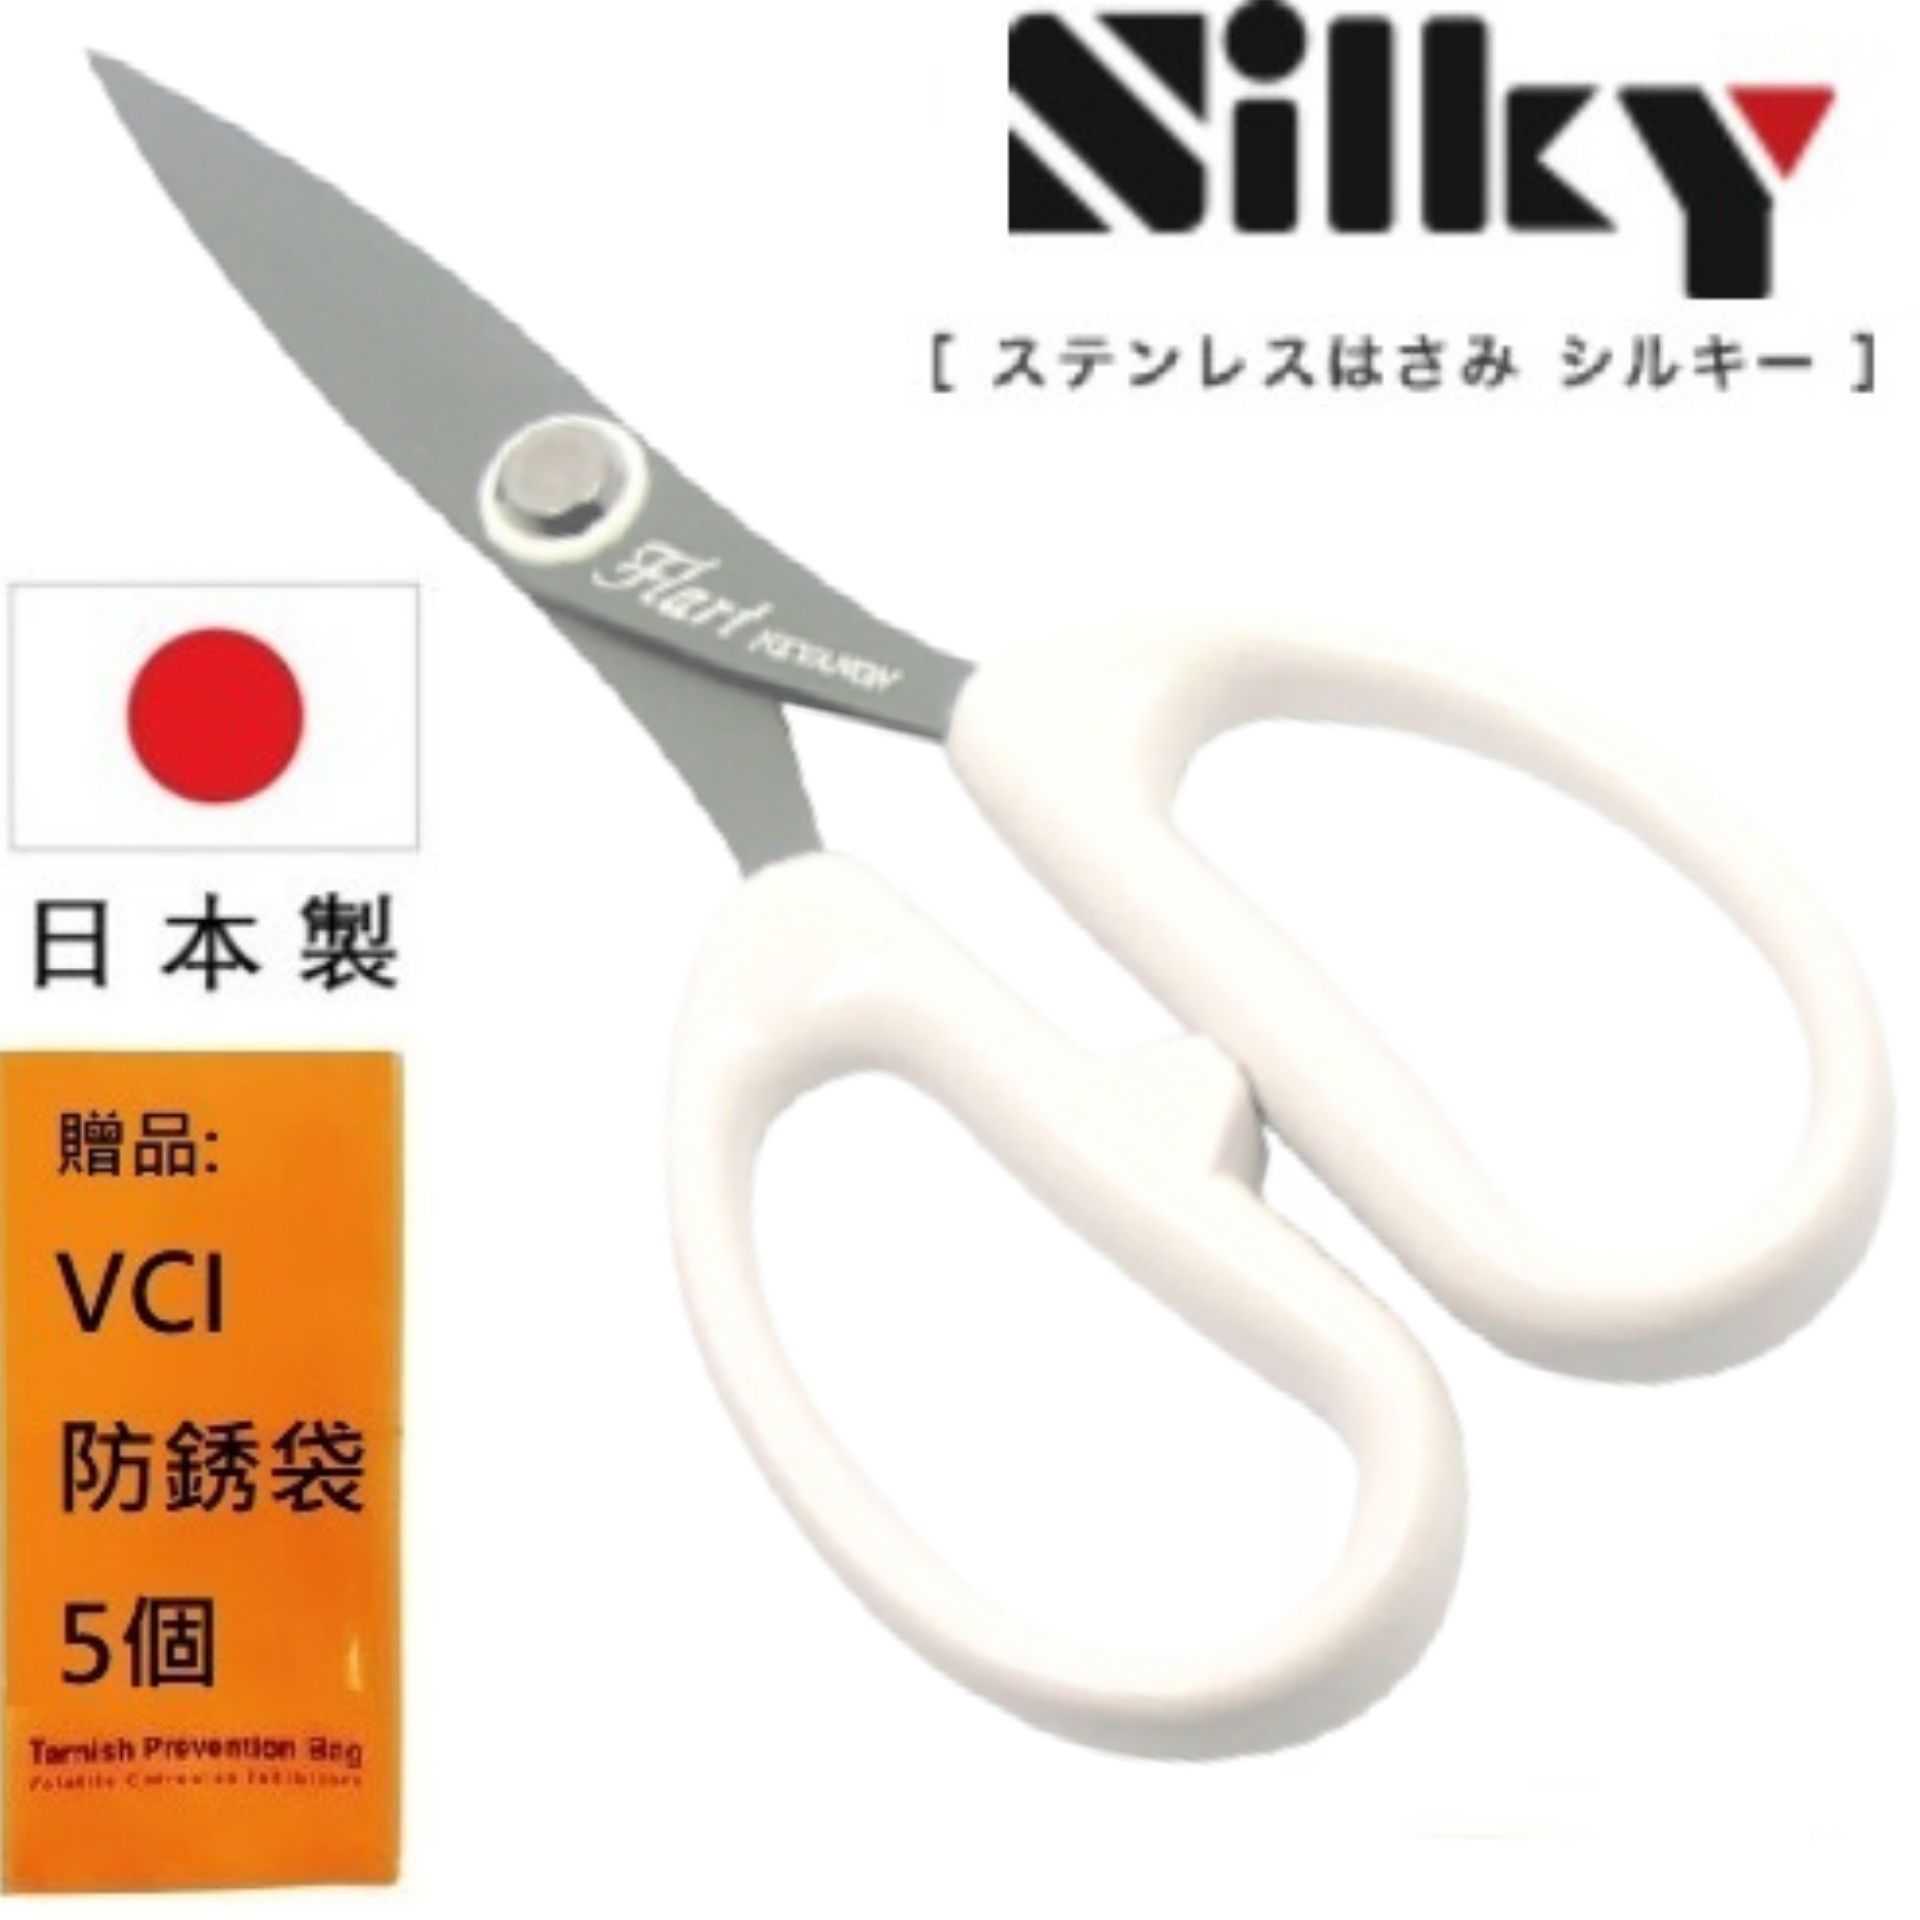 【日本SILKY】花藝剪刀-175mm 高強度使用性、高度耐損機械性能